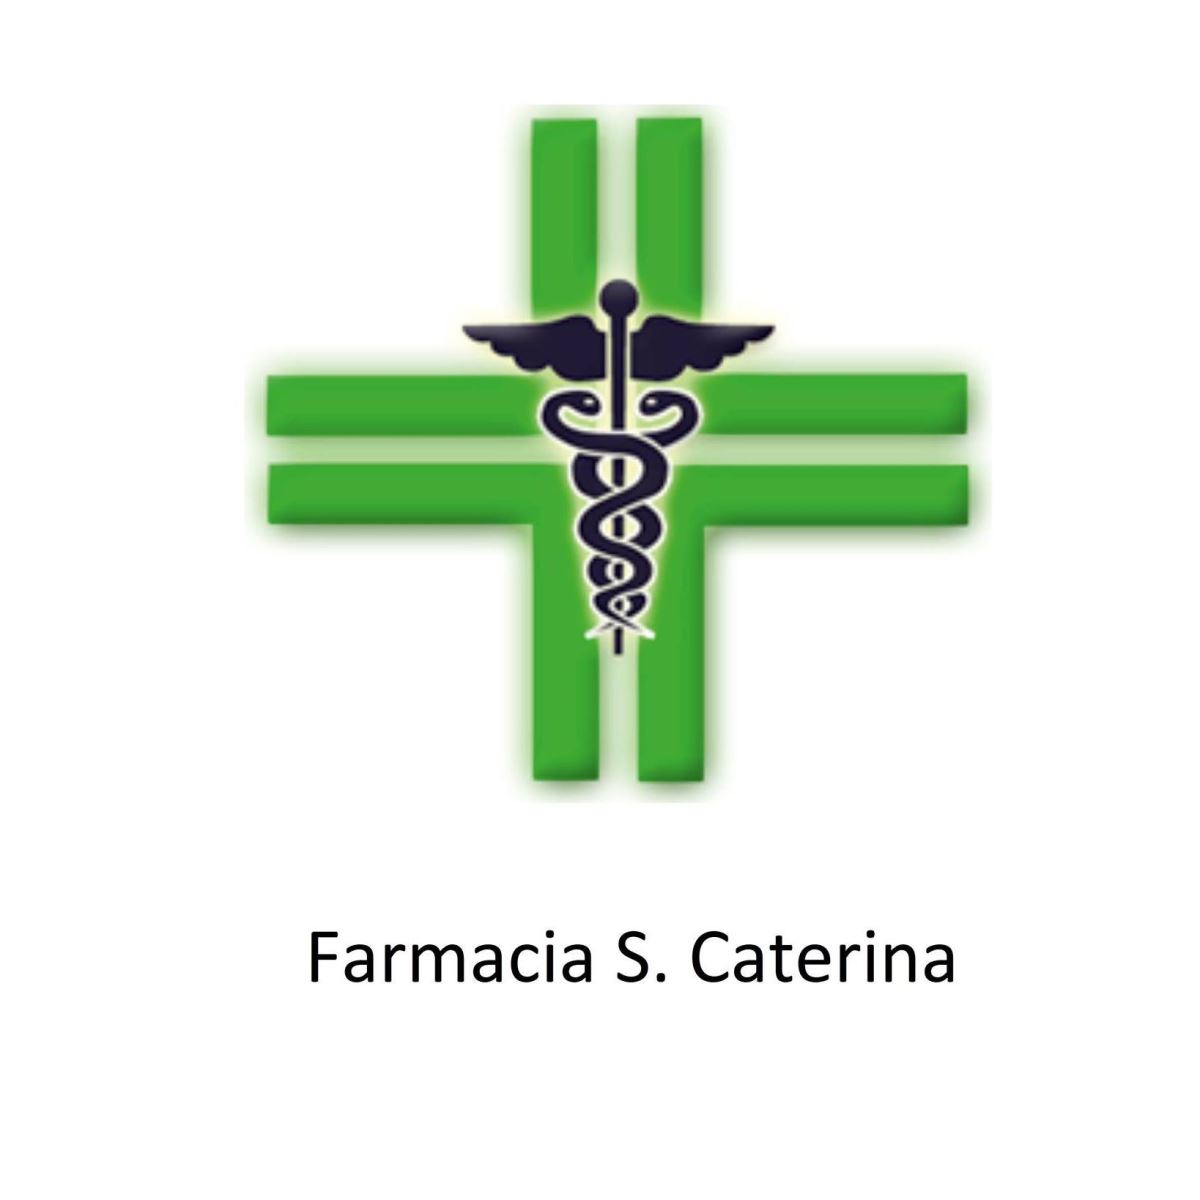 Farmacia S. Caterina